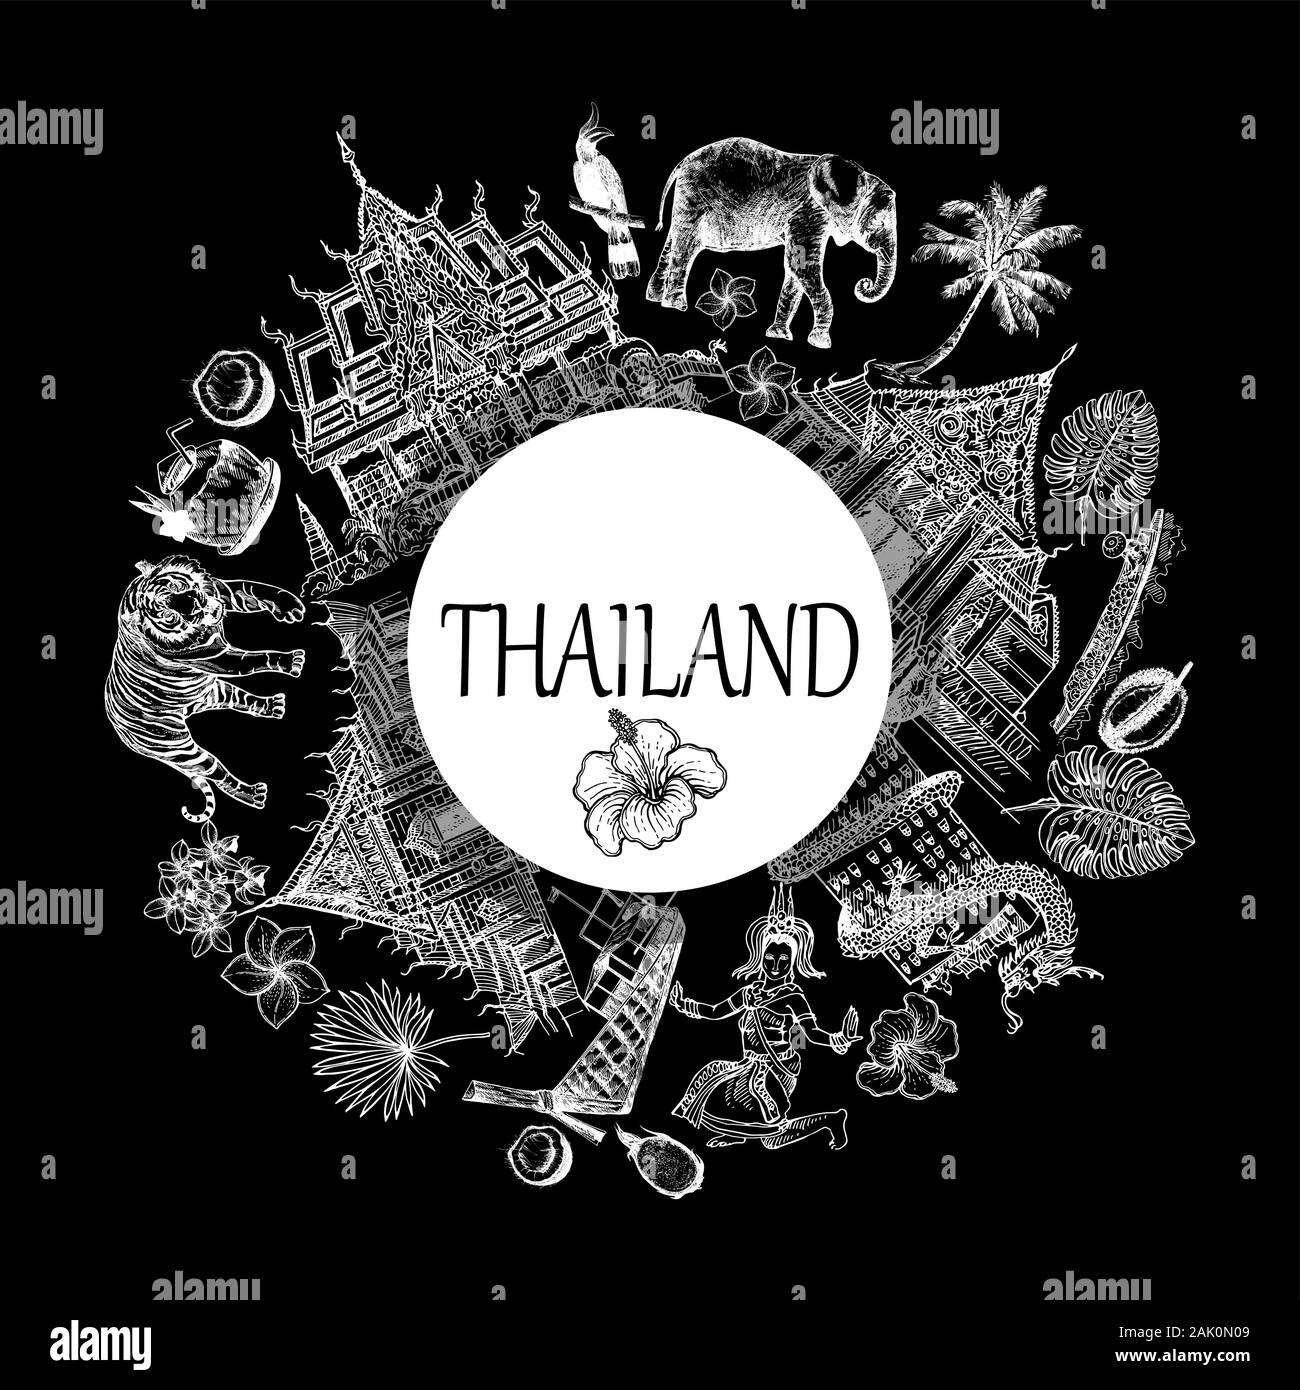 Poster Karte Zusammensetzung von Hand gezeichnete Skizze stil Thailand verwandte Objekte auf schwarzem Hintergrund isoliert. Vector Illustration. Stock Vektor